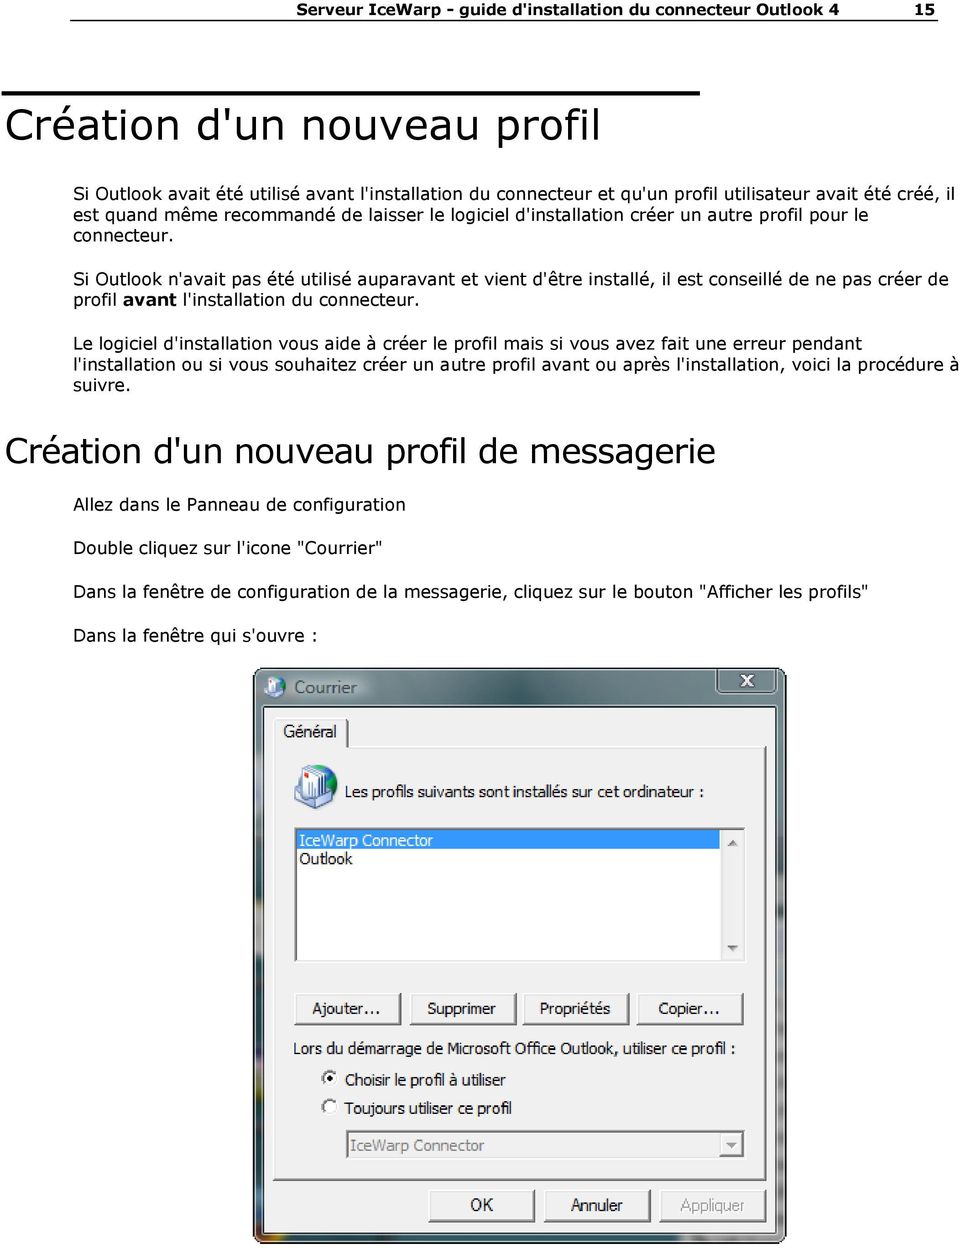 Si Outlook n'avait pas été utilisé auparavant et vient d'être installé, il est conseillé de ne pas créer de profil avant l'installation du connecteur.